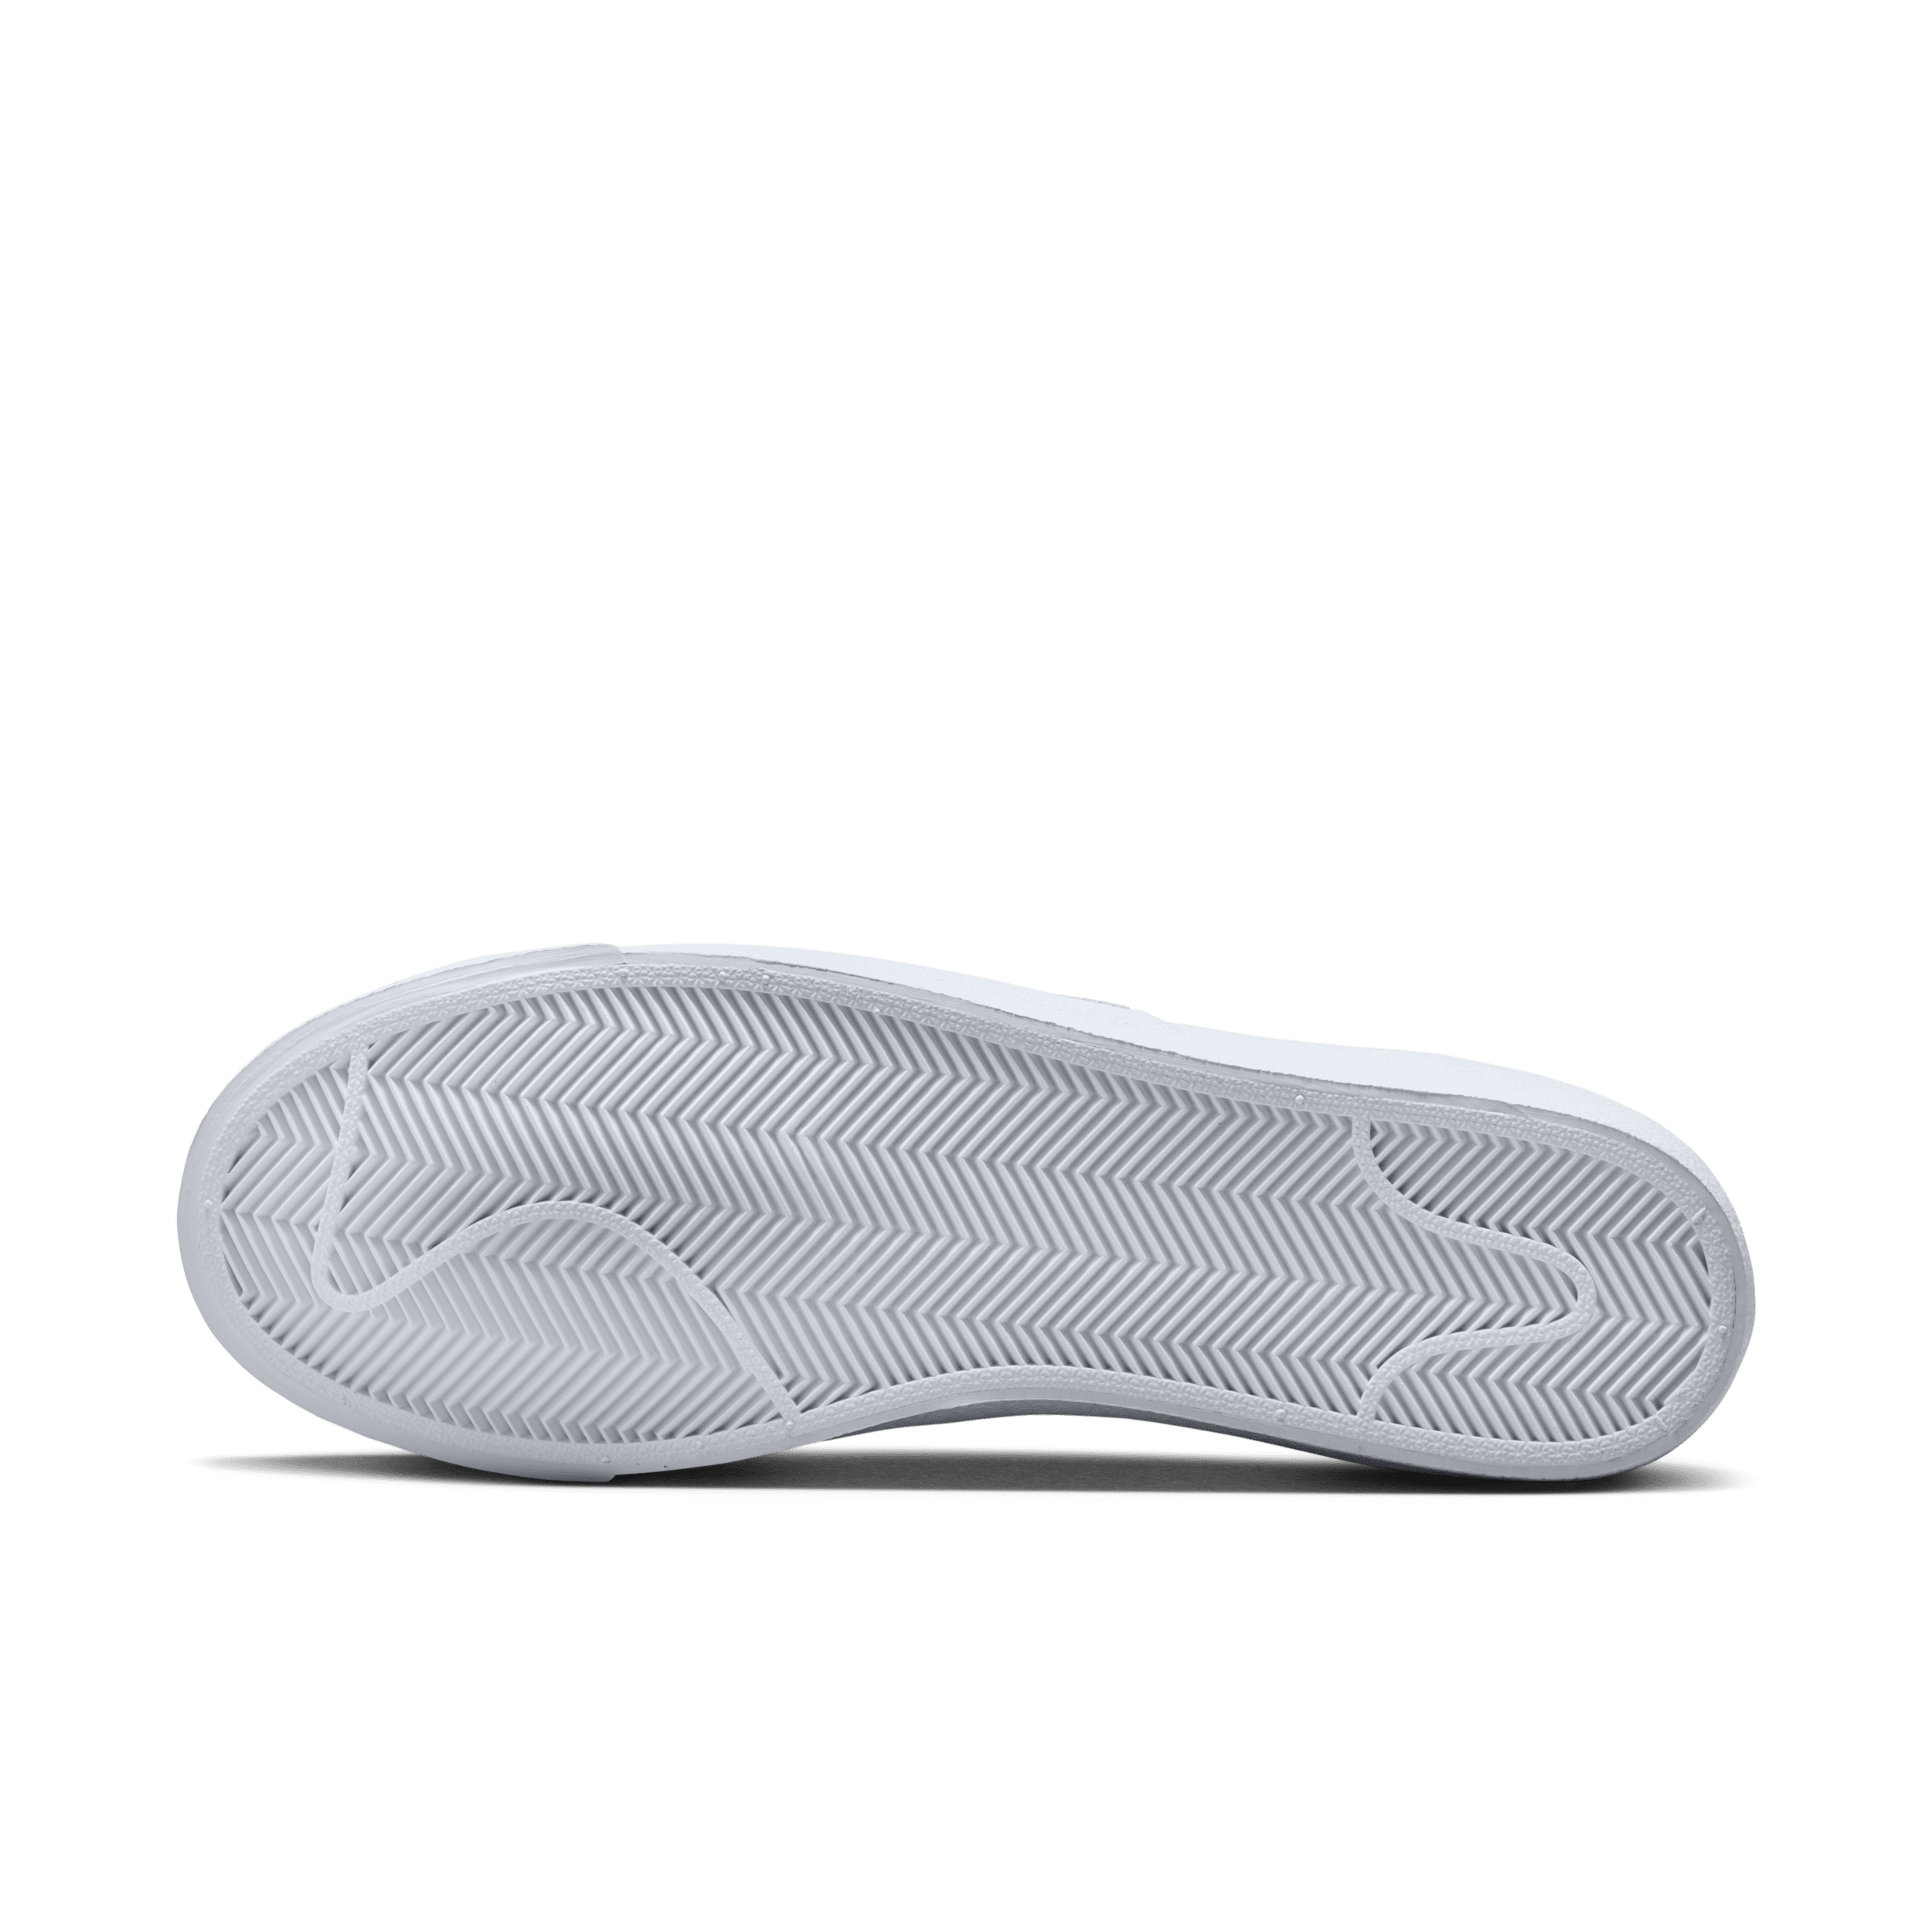 Nike Blazer Mid '77 Herrenschuh - Weiß